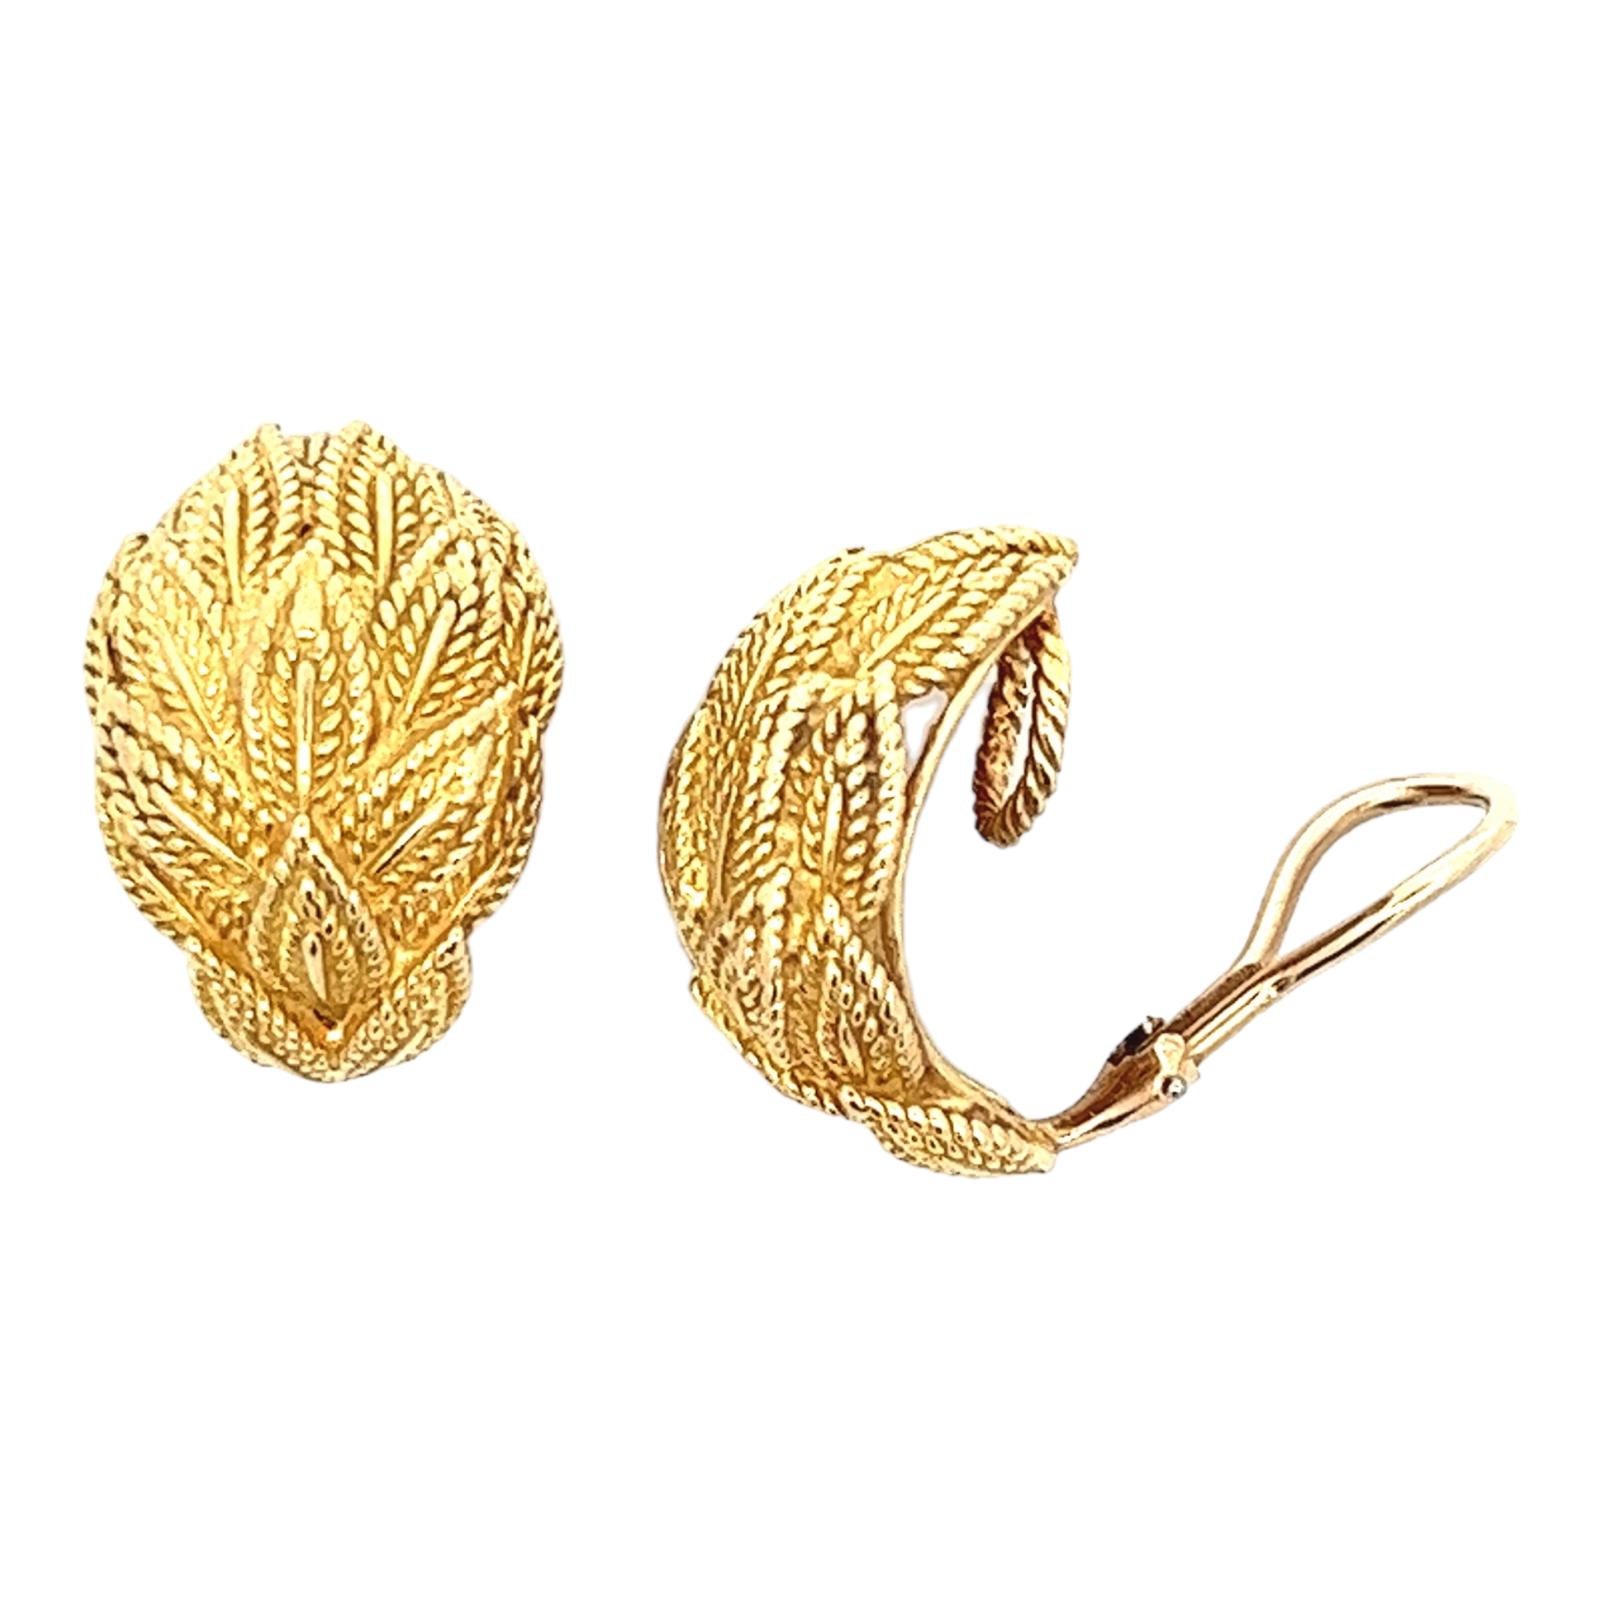 Modern Tiffany & Co. Leaf Motif Textured 18 Karat Yellow Gold Earclip Estate Earrings